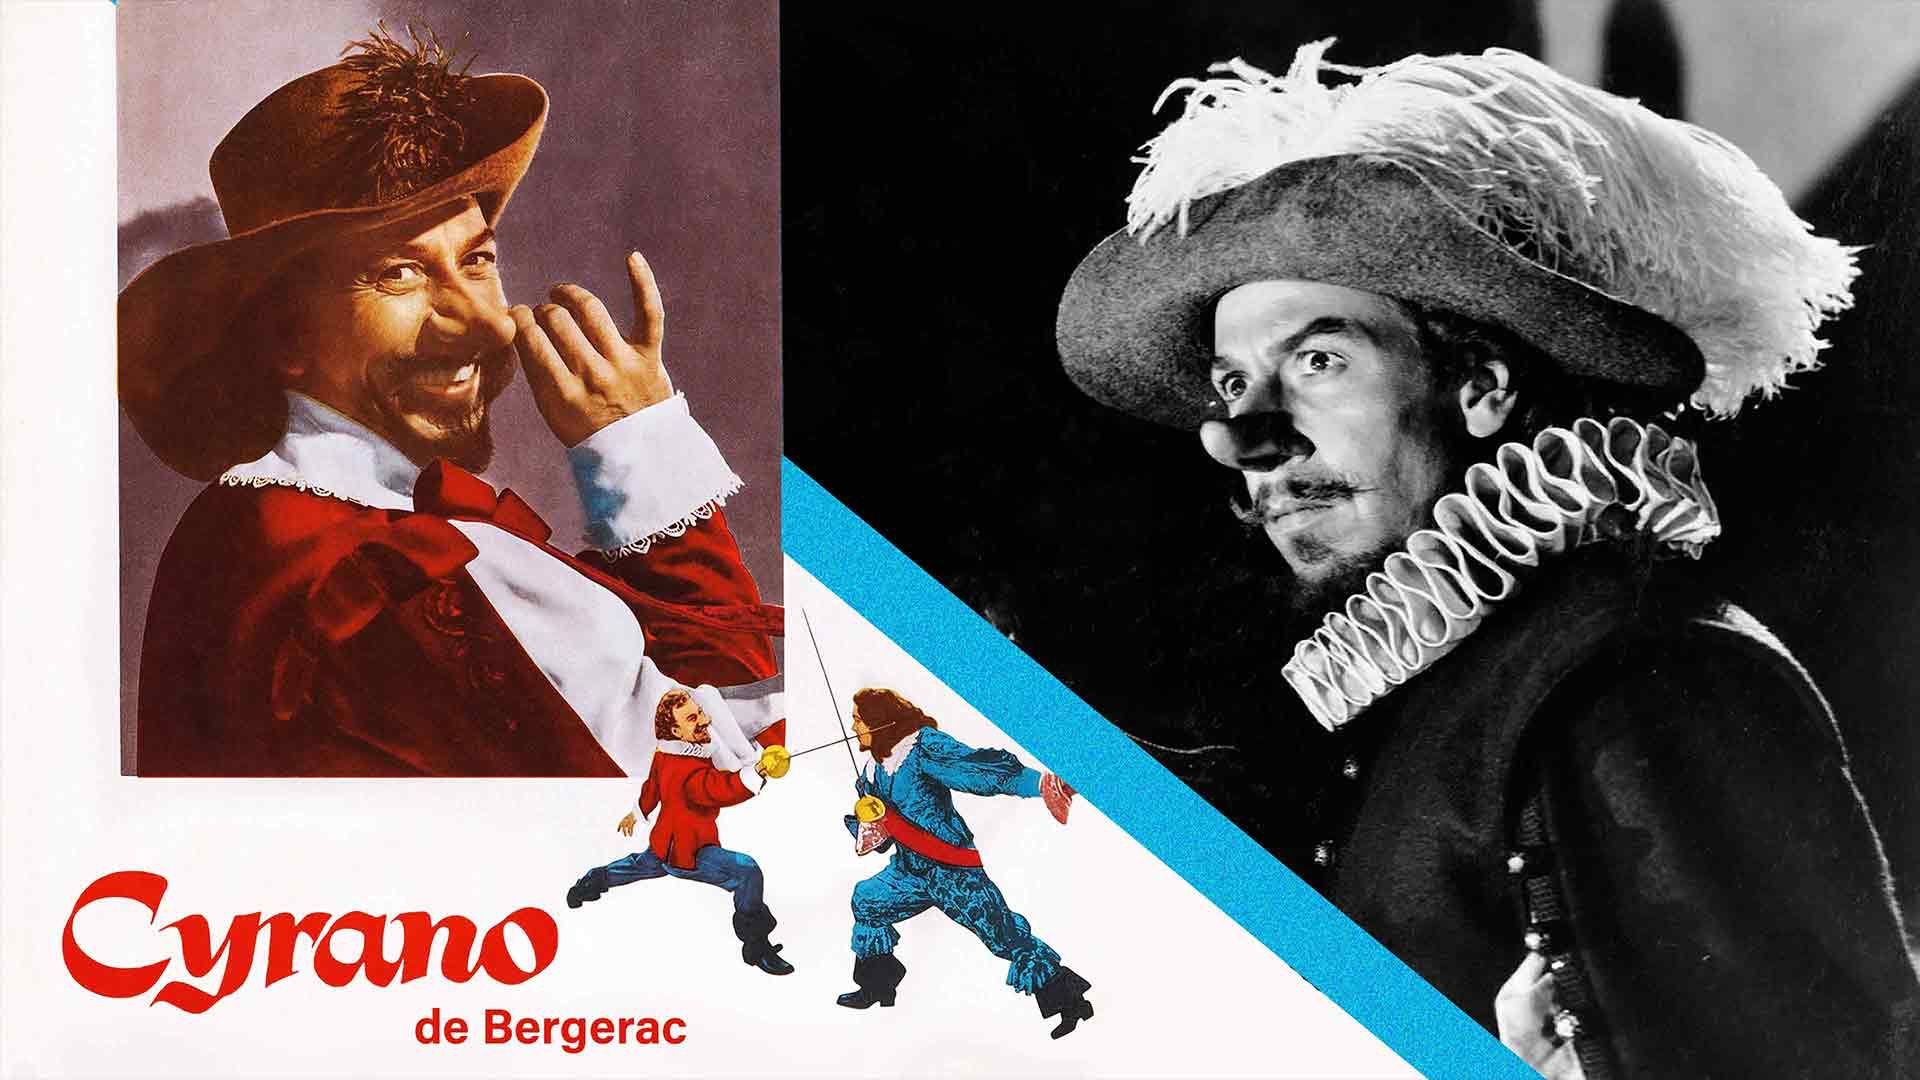 Cyrano de Bergerac Backdrop